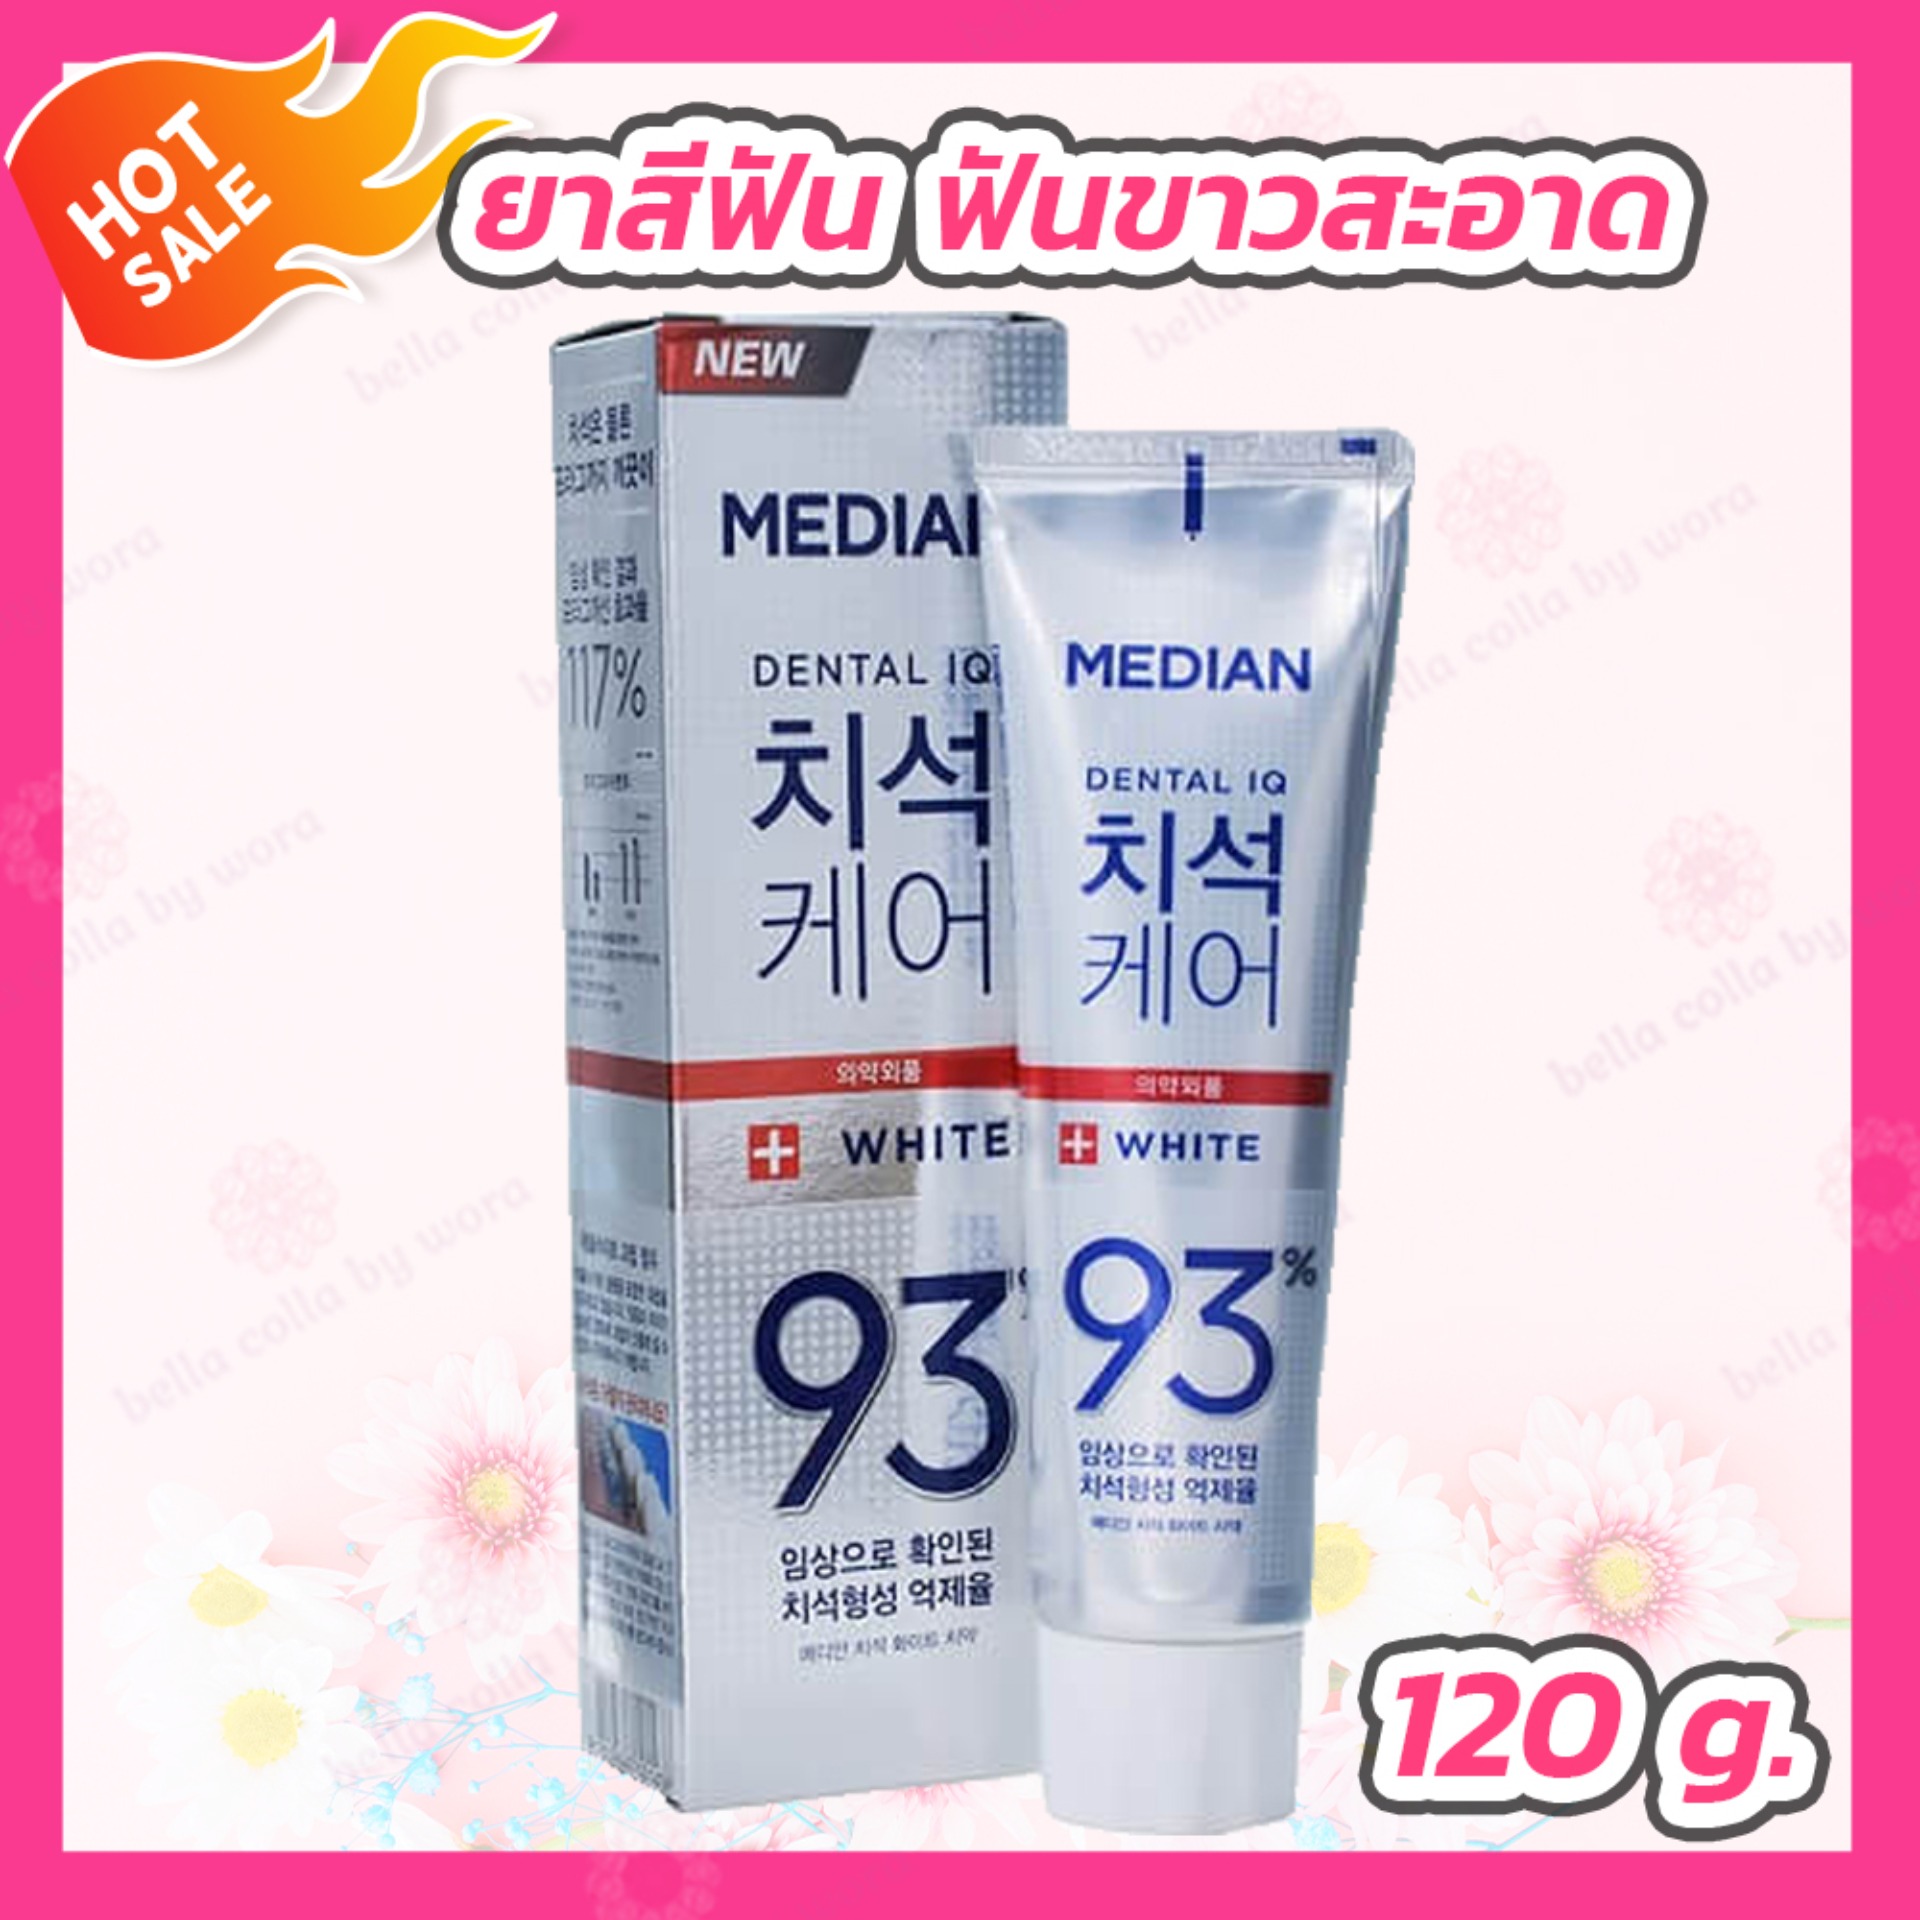 [นำเข้าจากเกาหลี] ยาสีฟันเกาหลี MEDIAN DENTAL IQ 93% (120 g.) สูตรสีขาว ฟันขาวสะอาดแข็งแรง